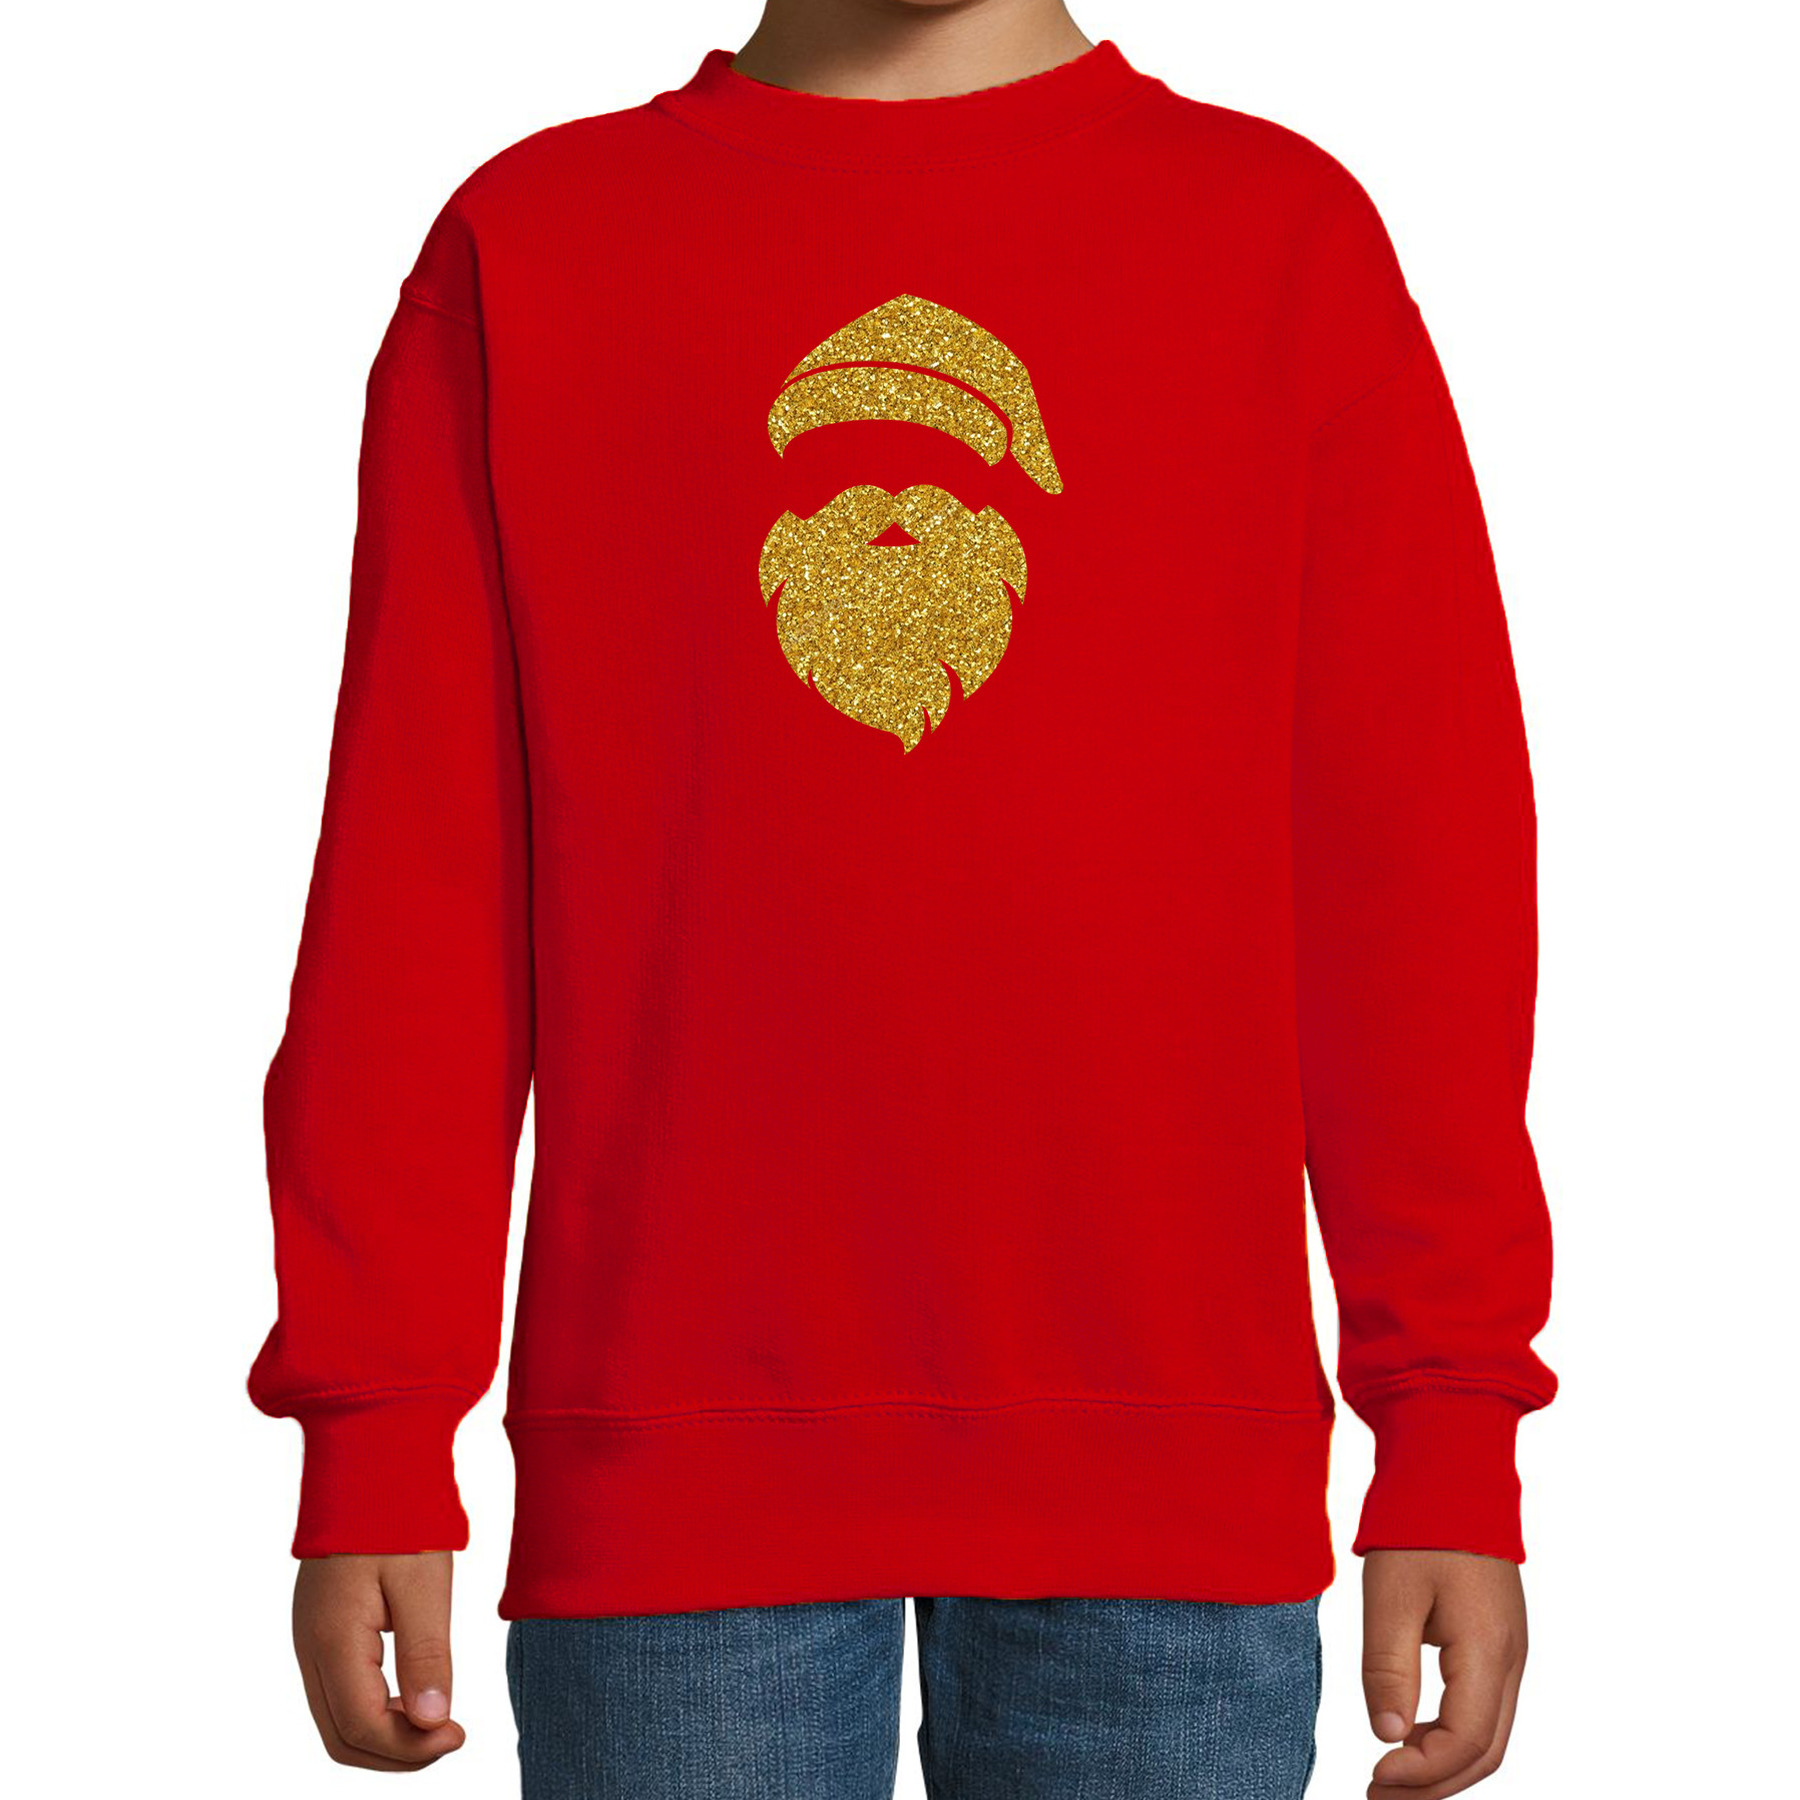 Kerstman hoofd Kerstsweater - Kersttrui rood voor kinderen met gouden glitter bedrukking